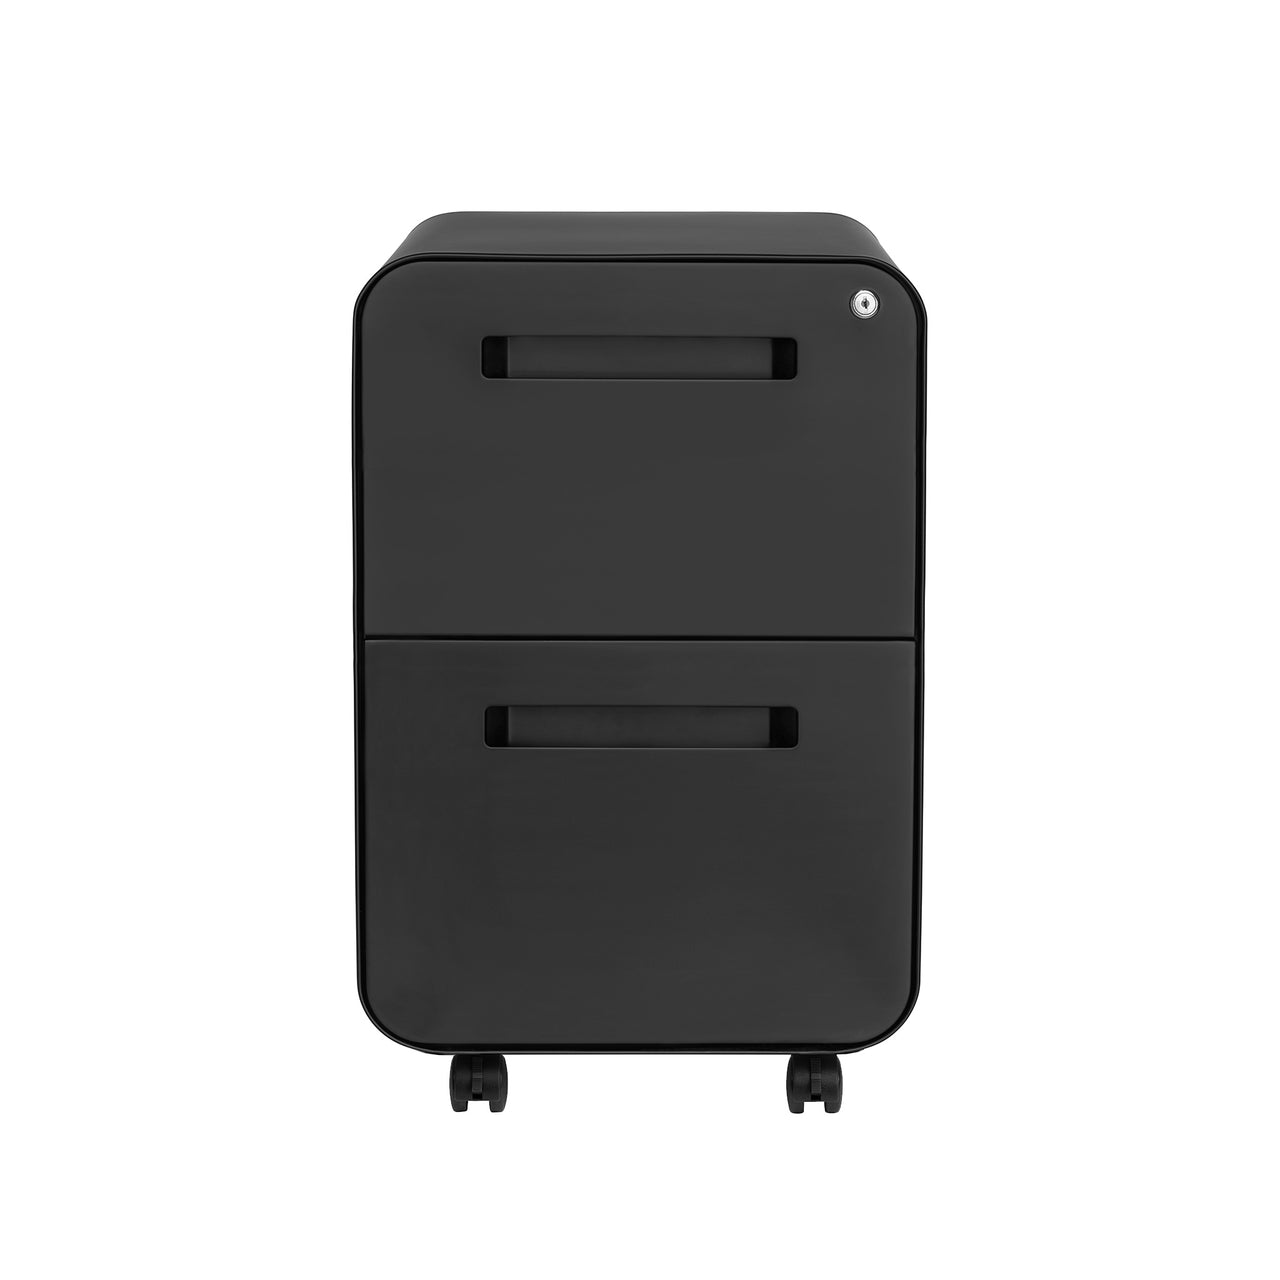 Stockpile Curve 2-Drawer File Cabinet (Black)